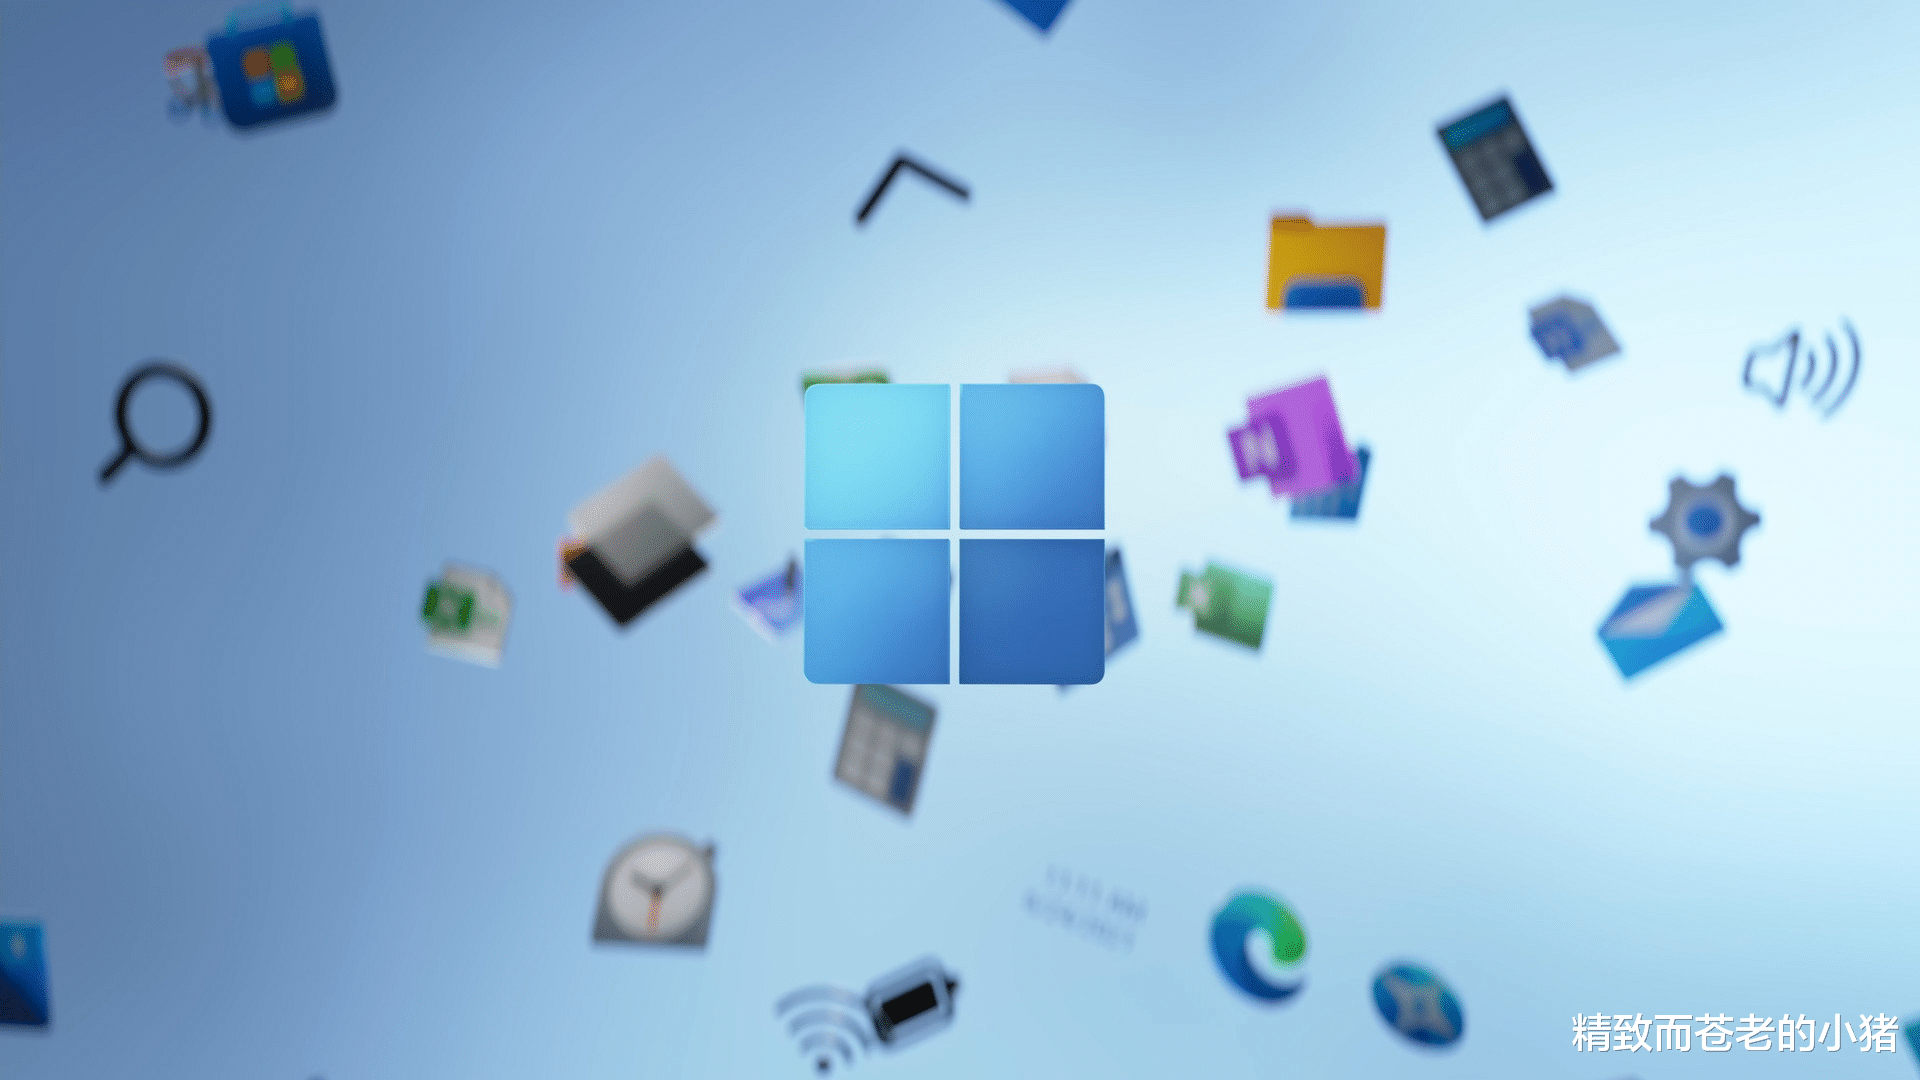 Windows11|Windows 11 确认于 10 月 5 日上市，同步开放免费升级